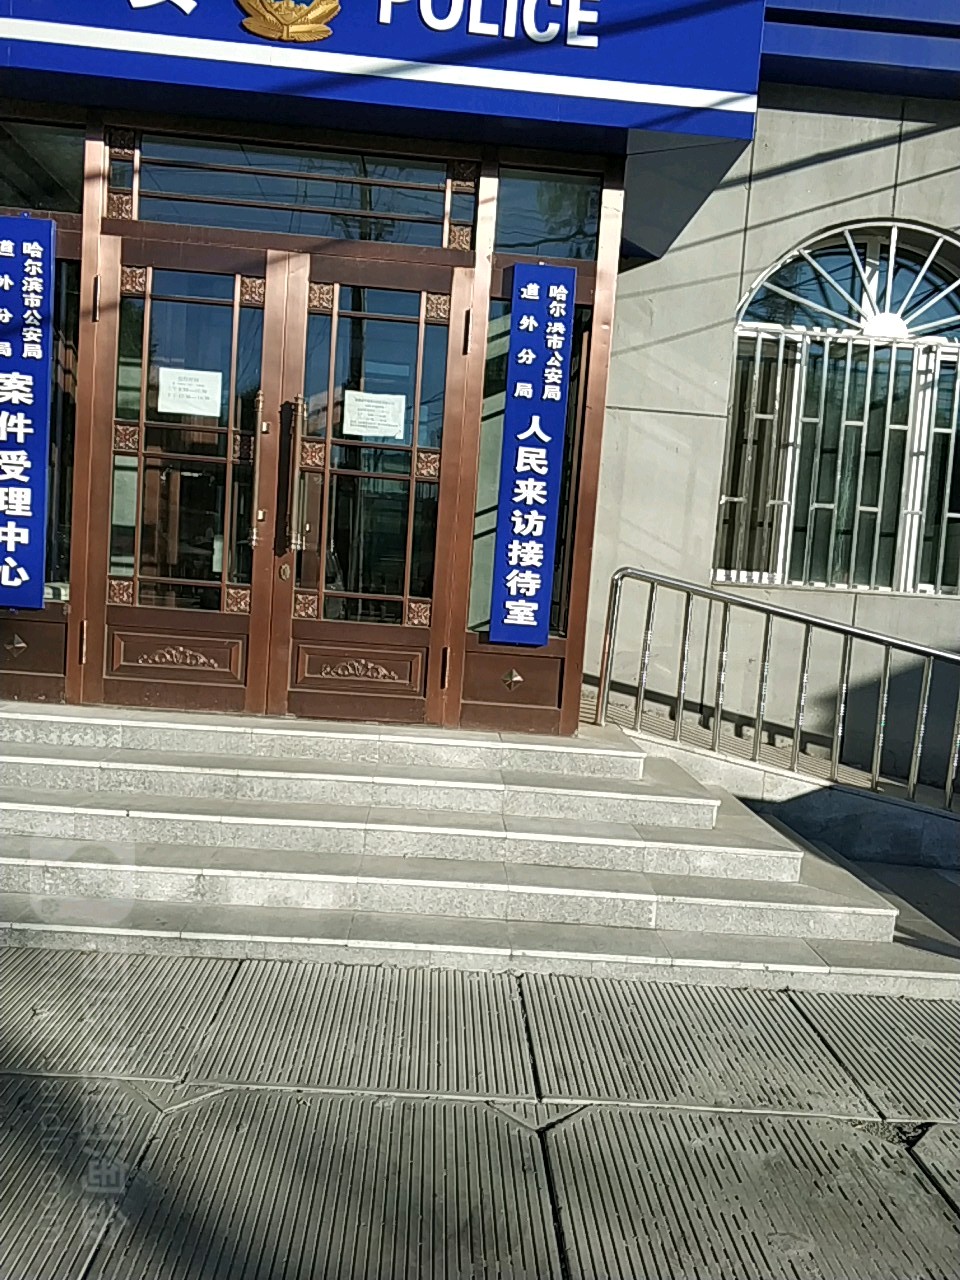 哈尔滨市公安局大楼图片